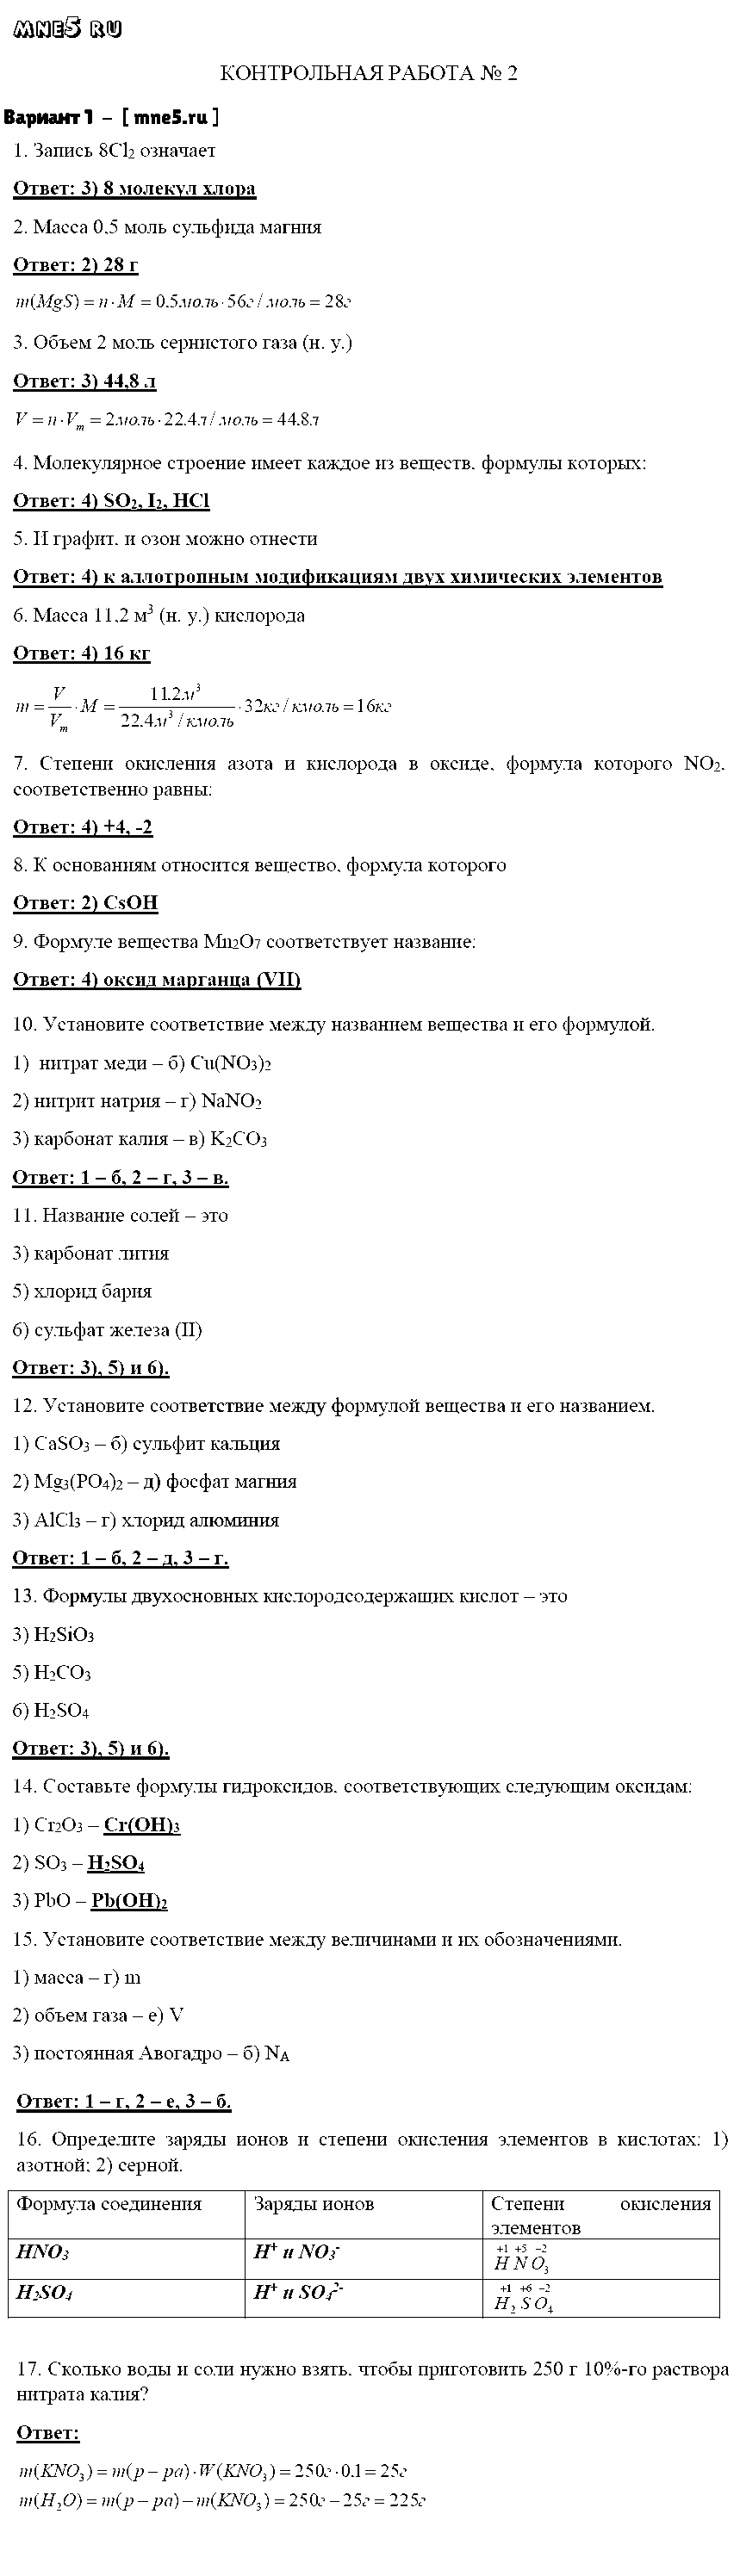 ГДЗ Химия 8 класс - Вариант 1